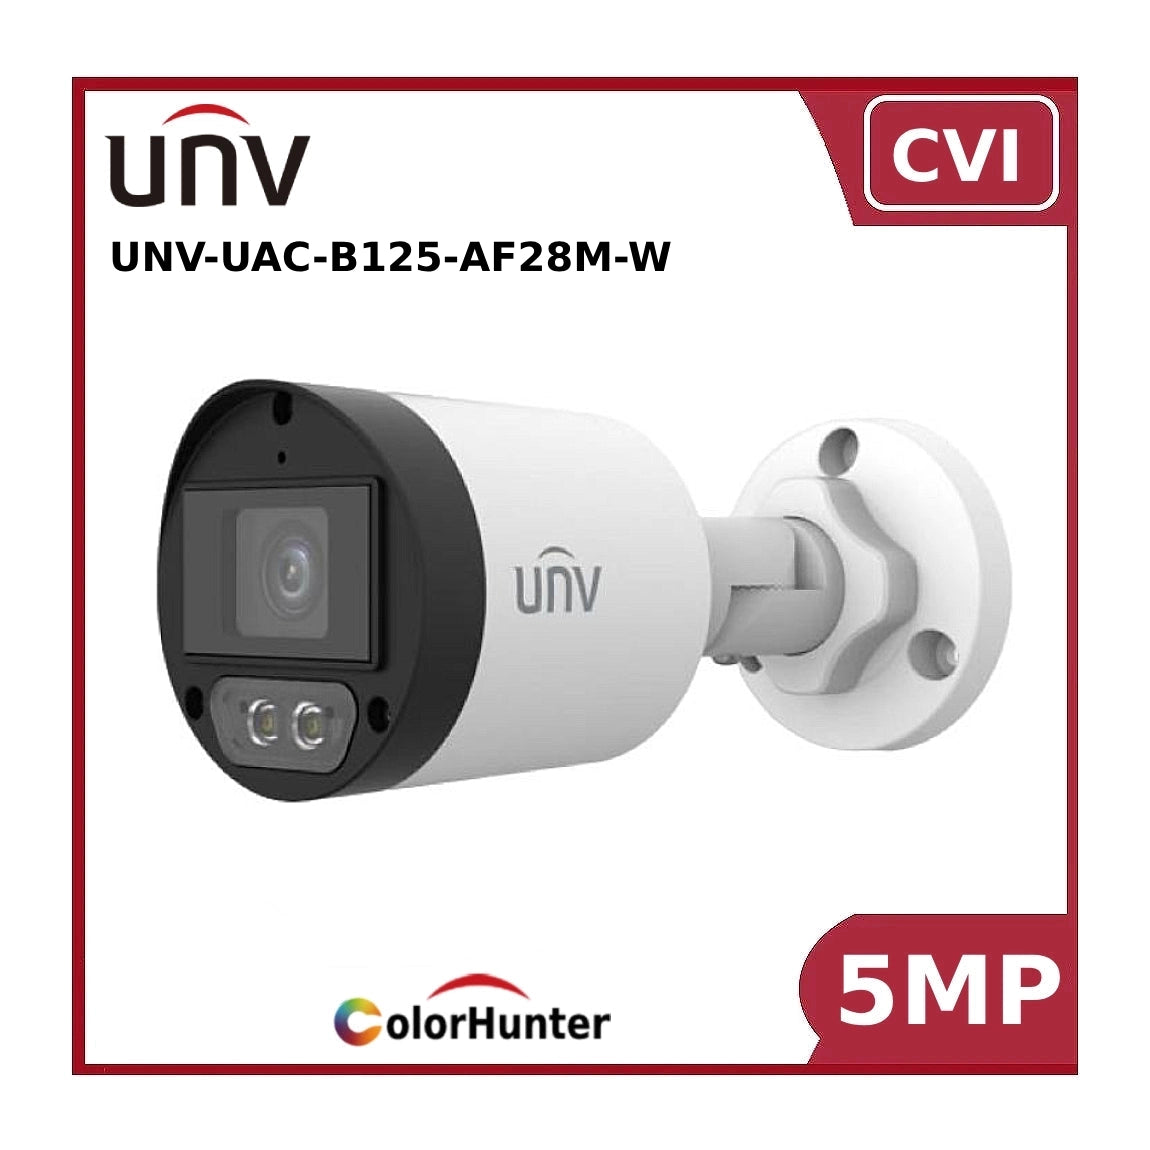 UNV-UAC-B125-AF28M-W